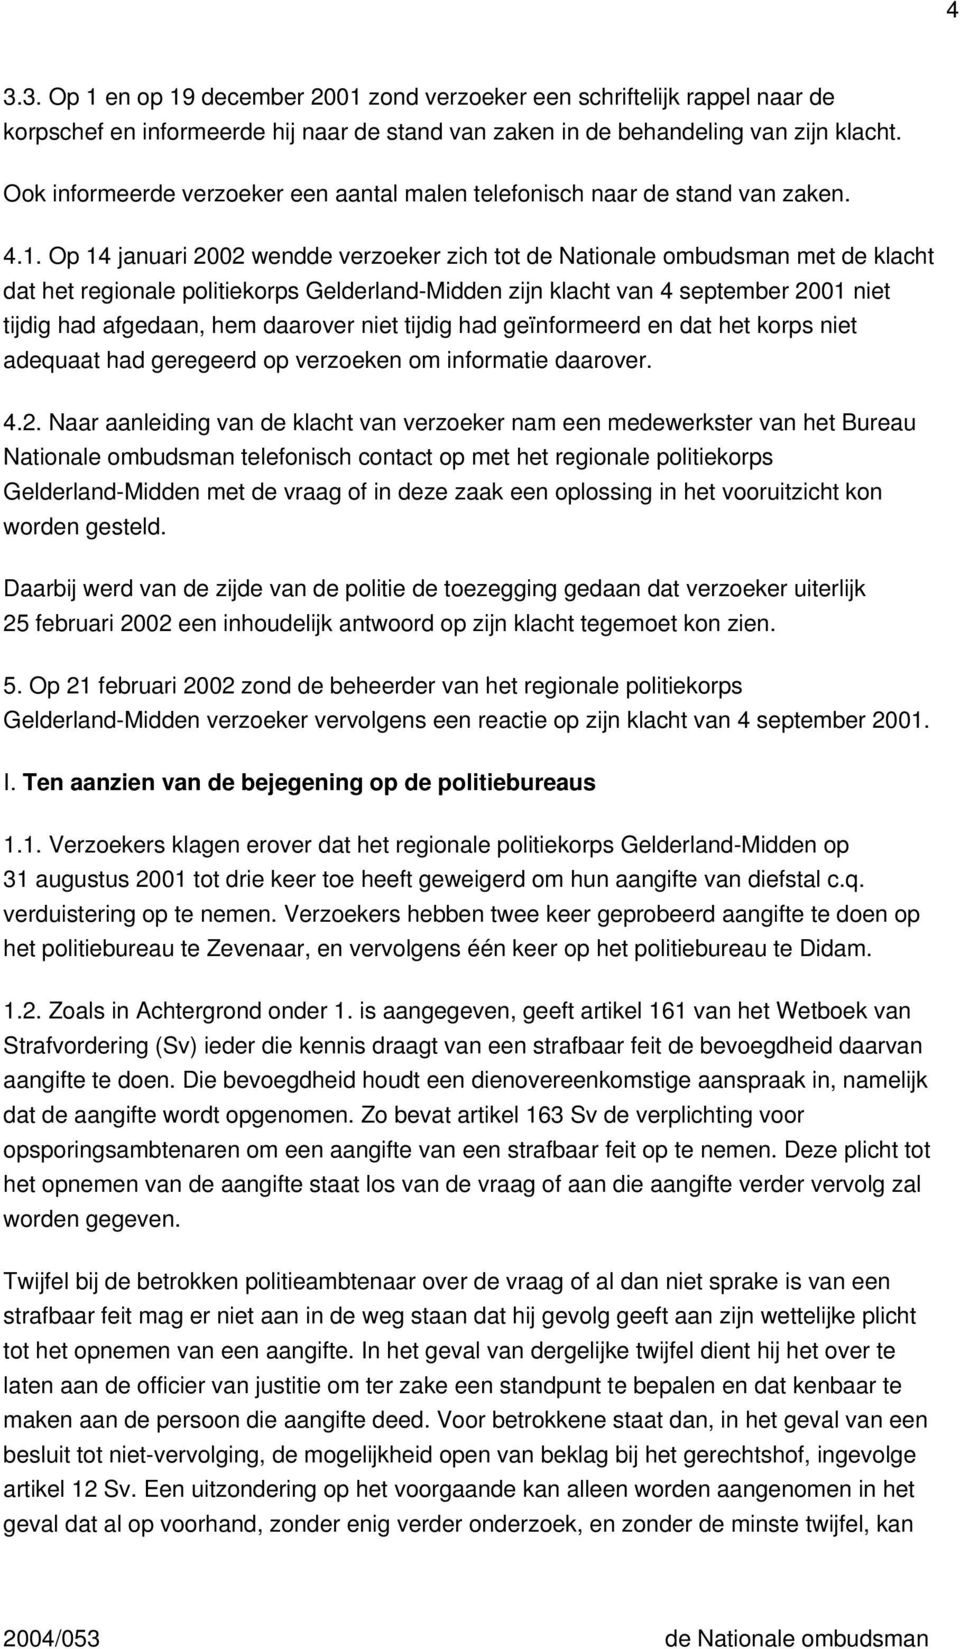 Op 14 januari 2002 wendde verzoeker zich tot de Nationale ombudsman met de klacht dat het regionale politiekorps Gelderland-Midden zijn klacht van 4 september 2001 niet tijdig had afgedaan, hem